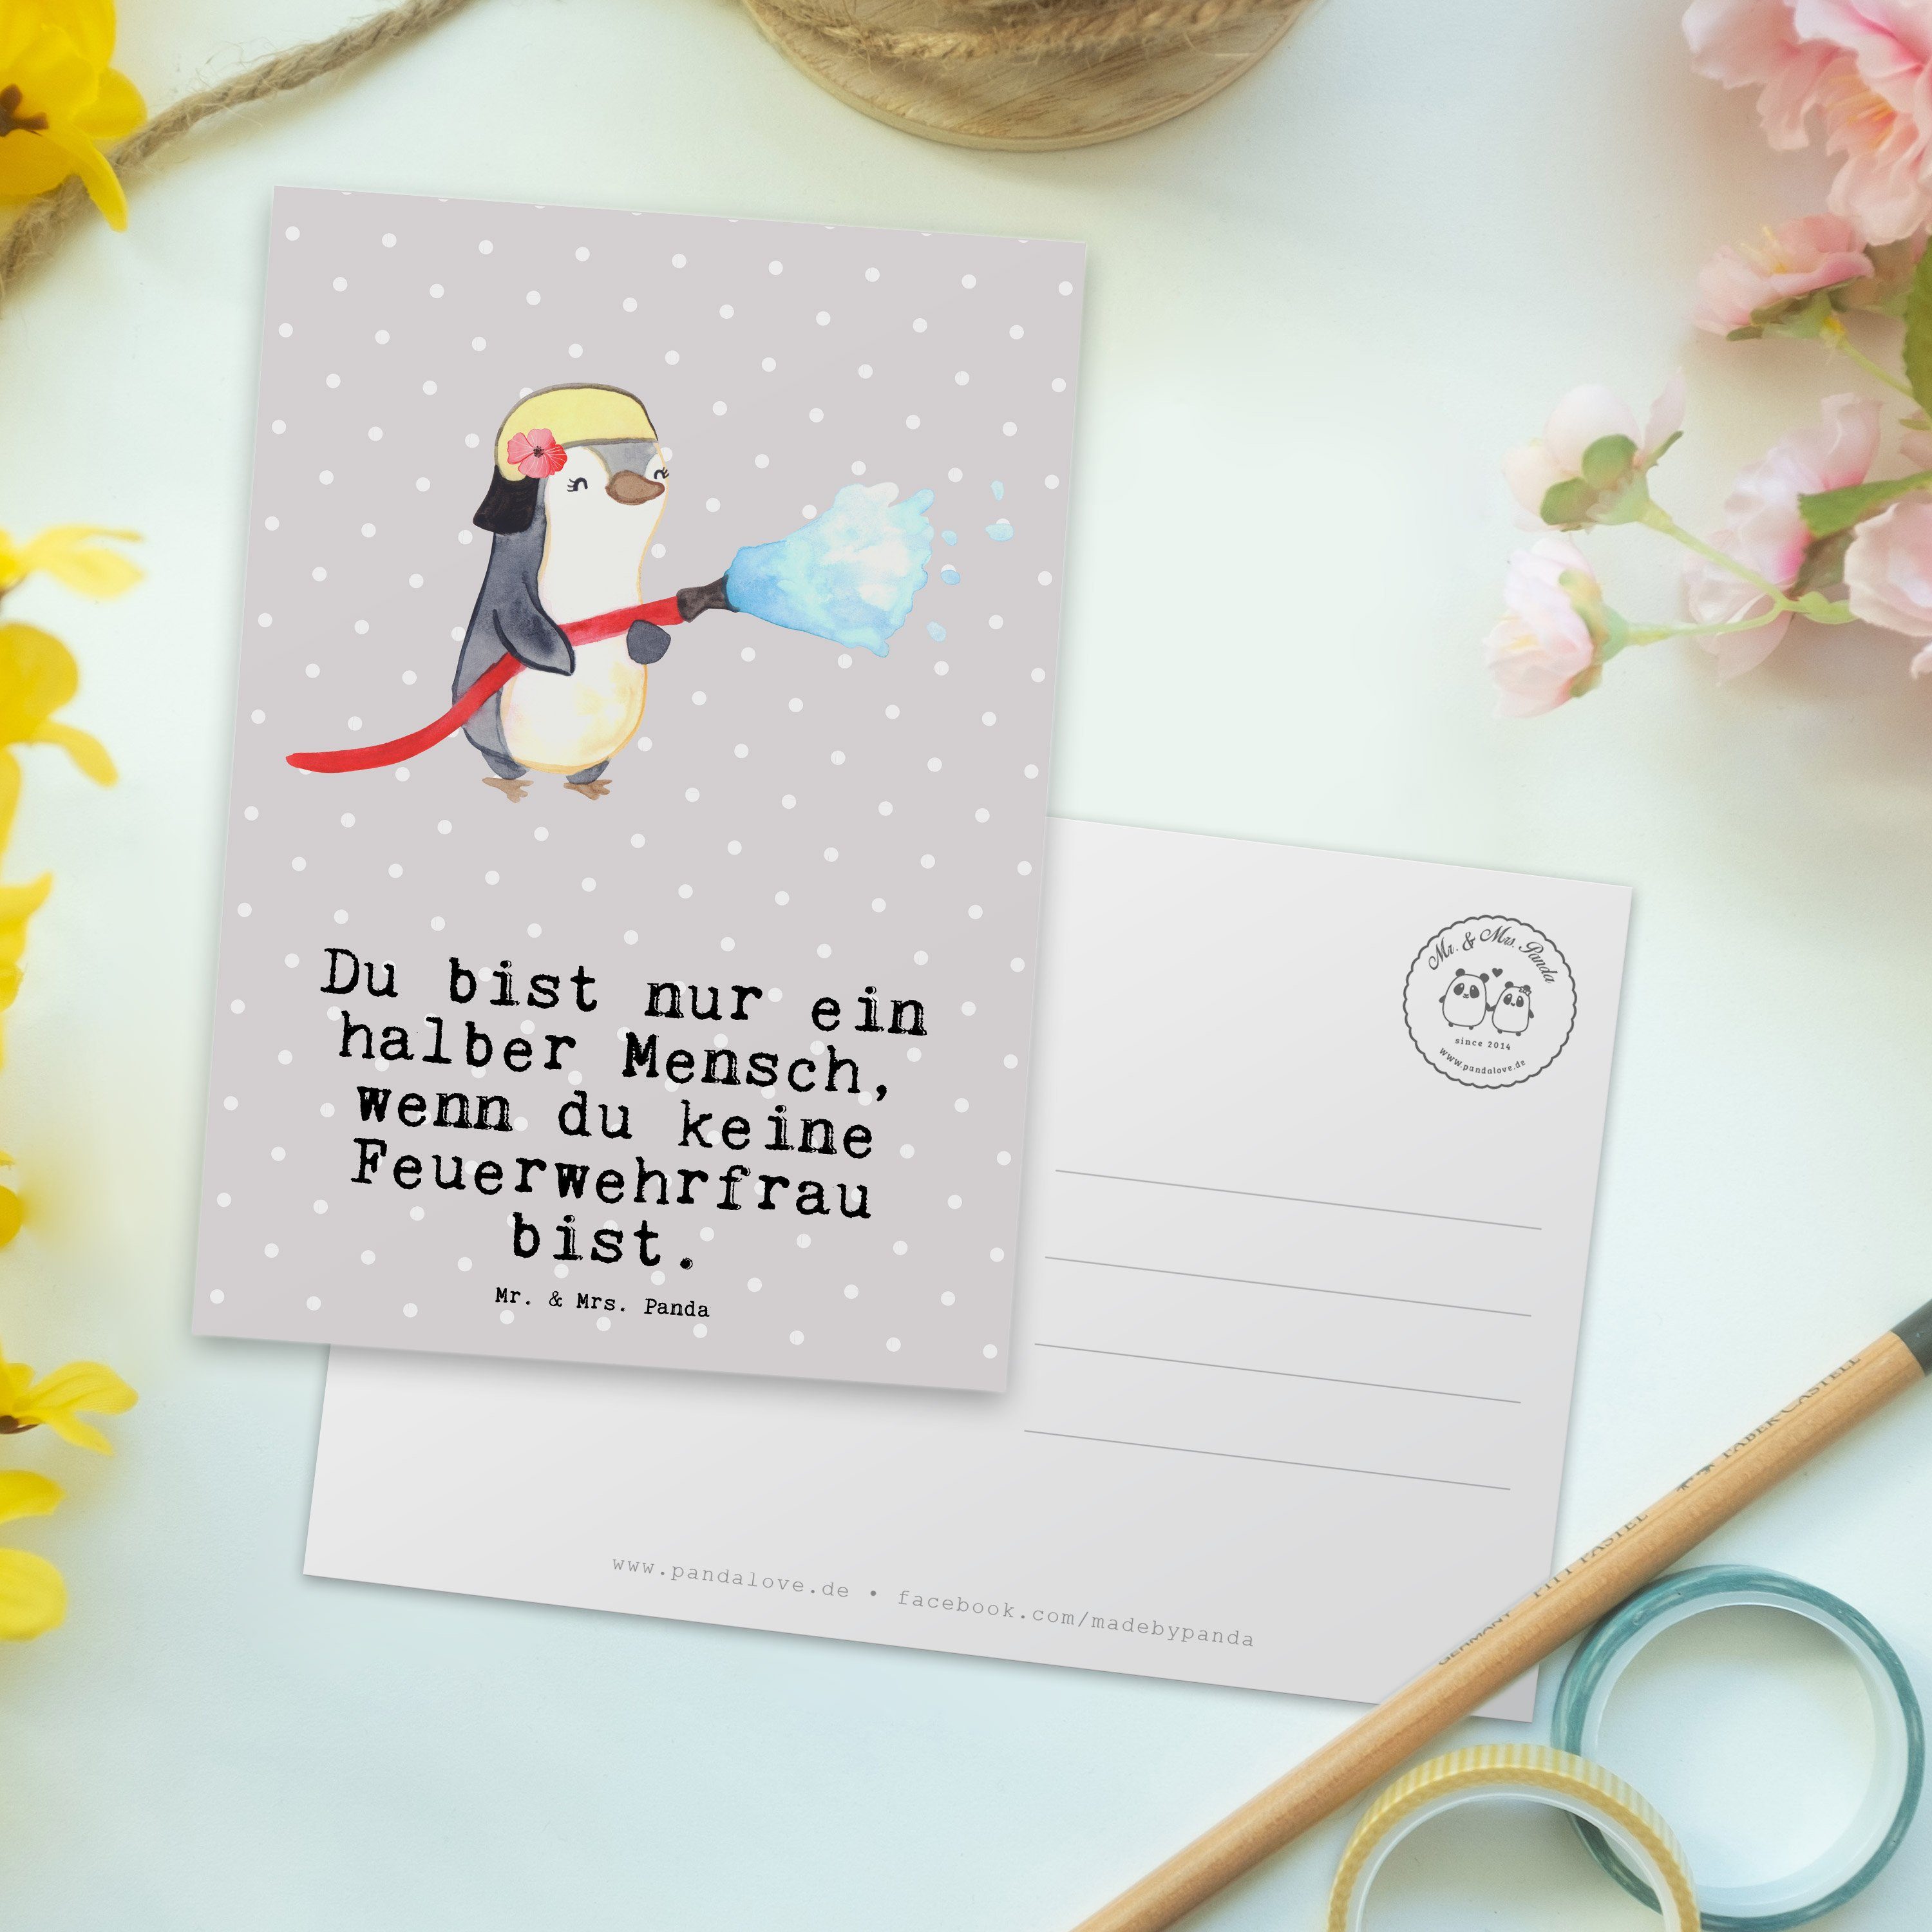 Mr. & Mrs. Panda - Feuerwehrfrau Feuerwehrhauptfrau Pastell mit Postkarte Herz Grau - Geschenk